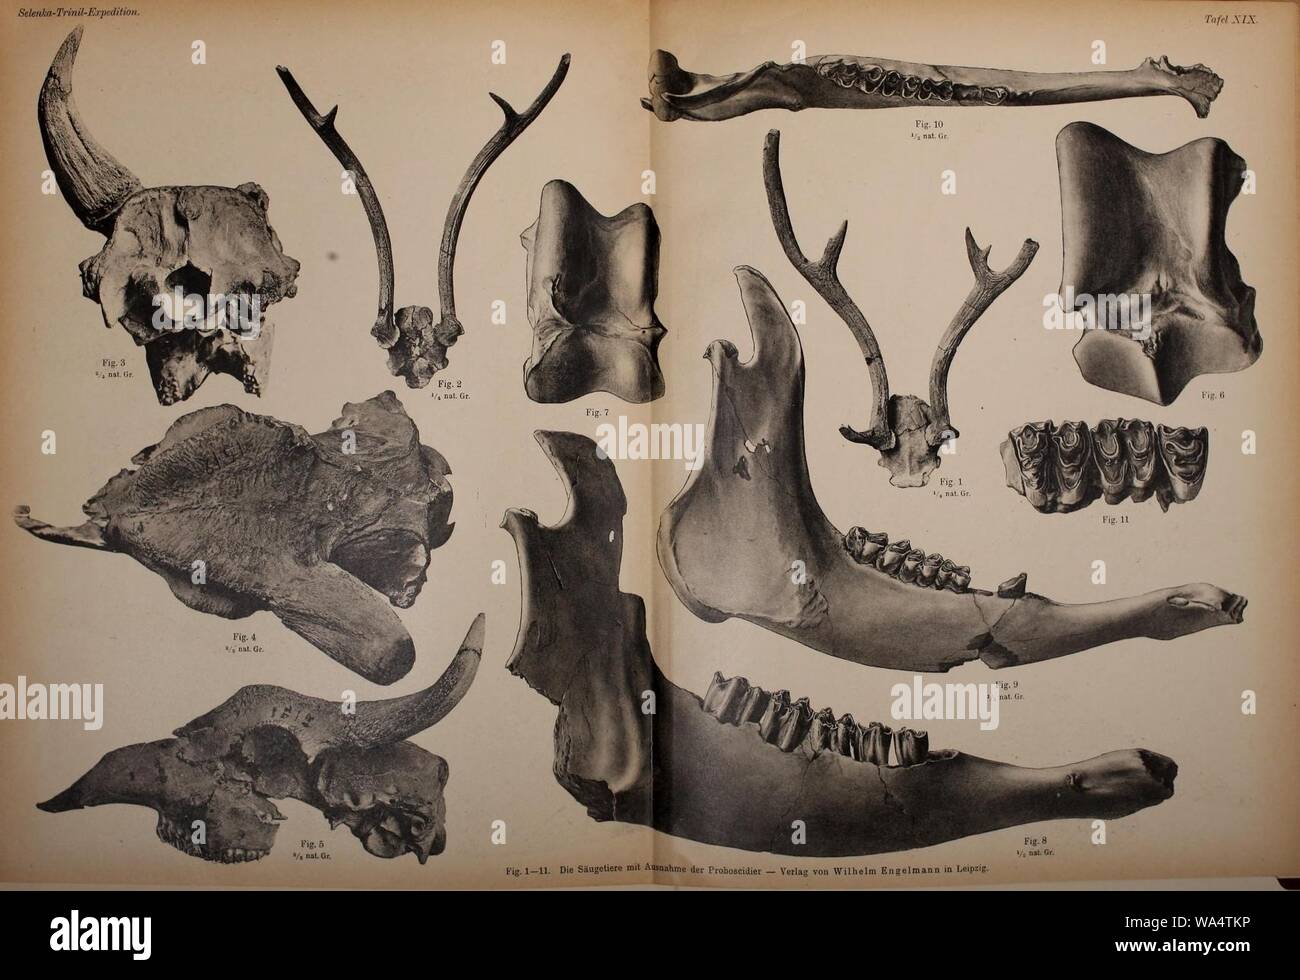 Die Pithecanthropus-Schichten auf Java Foto Stock